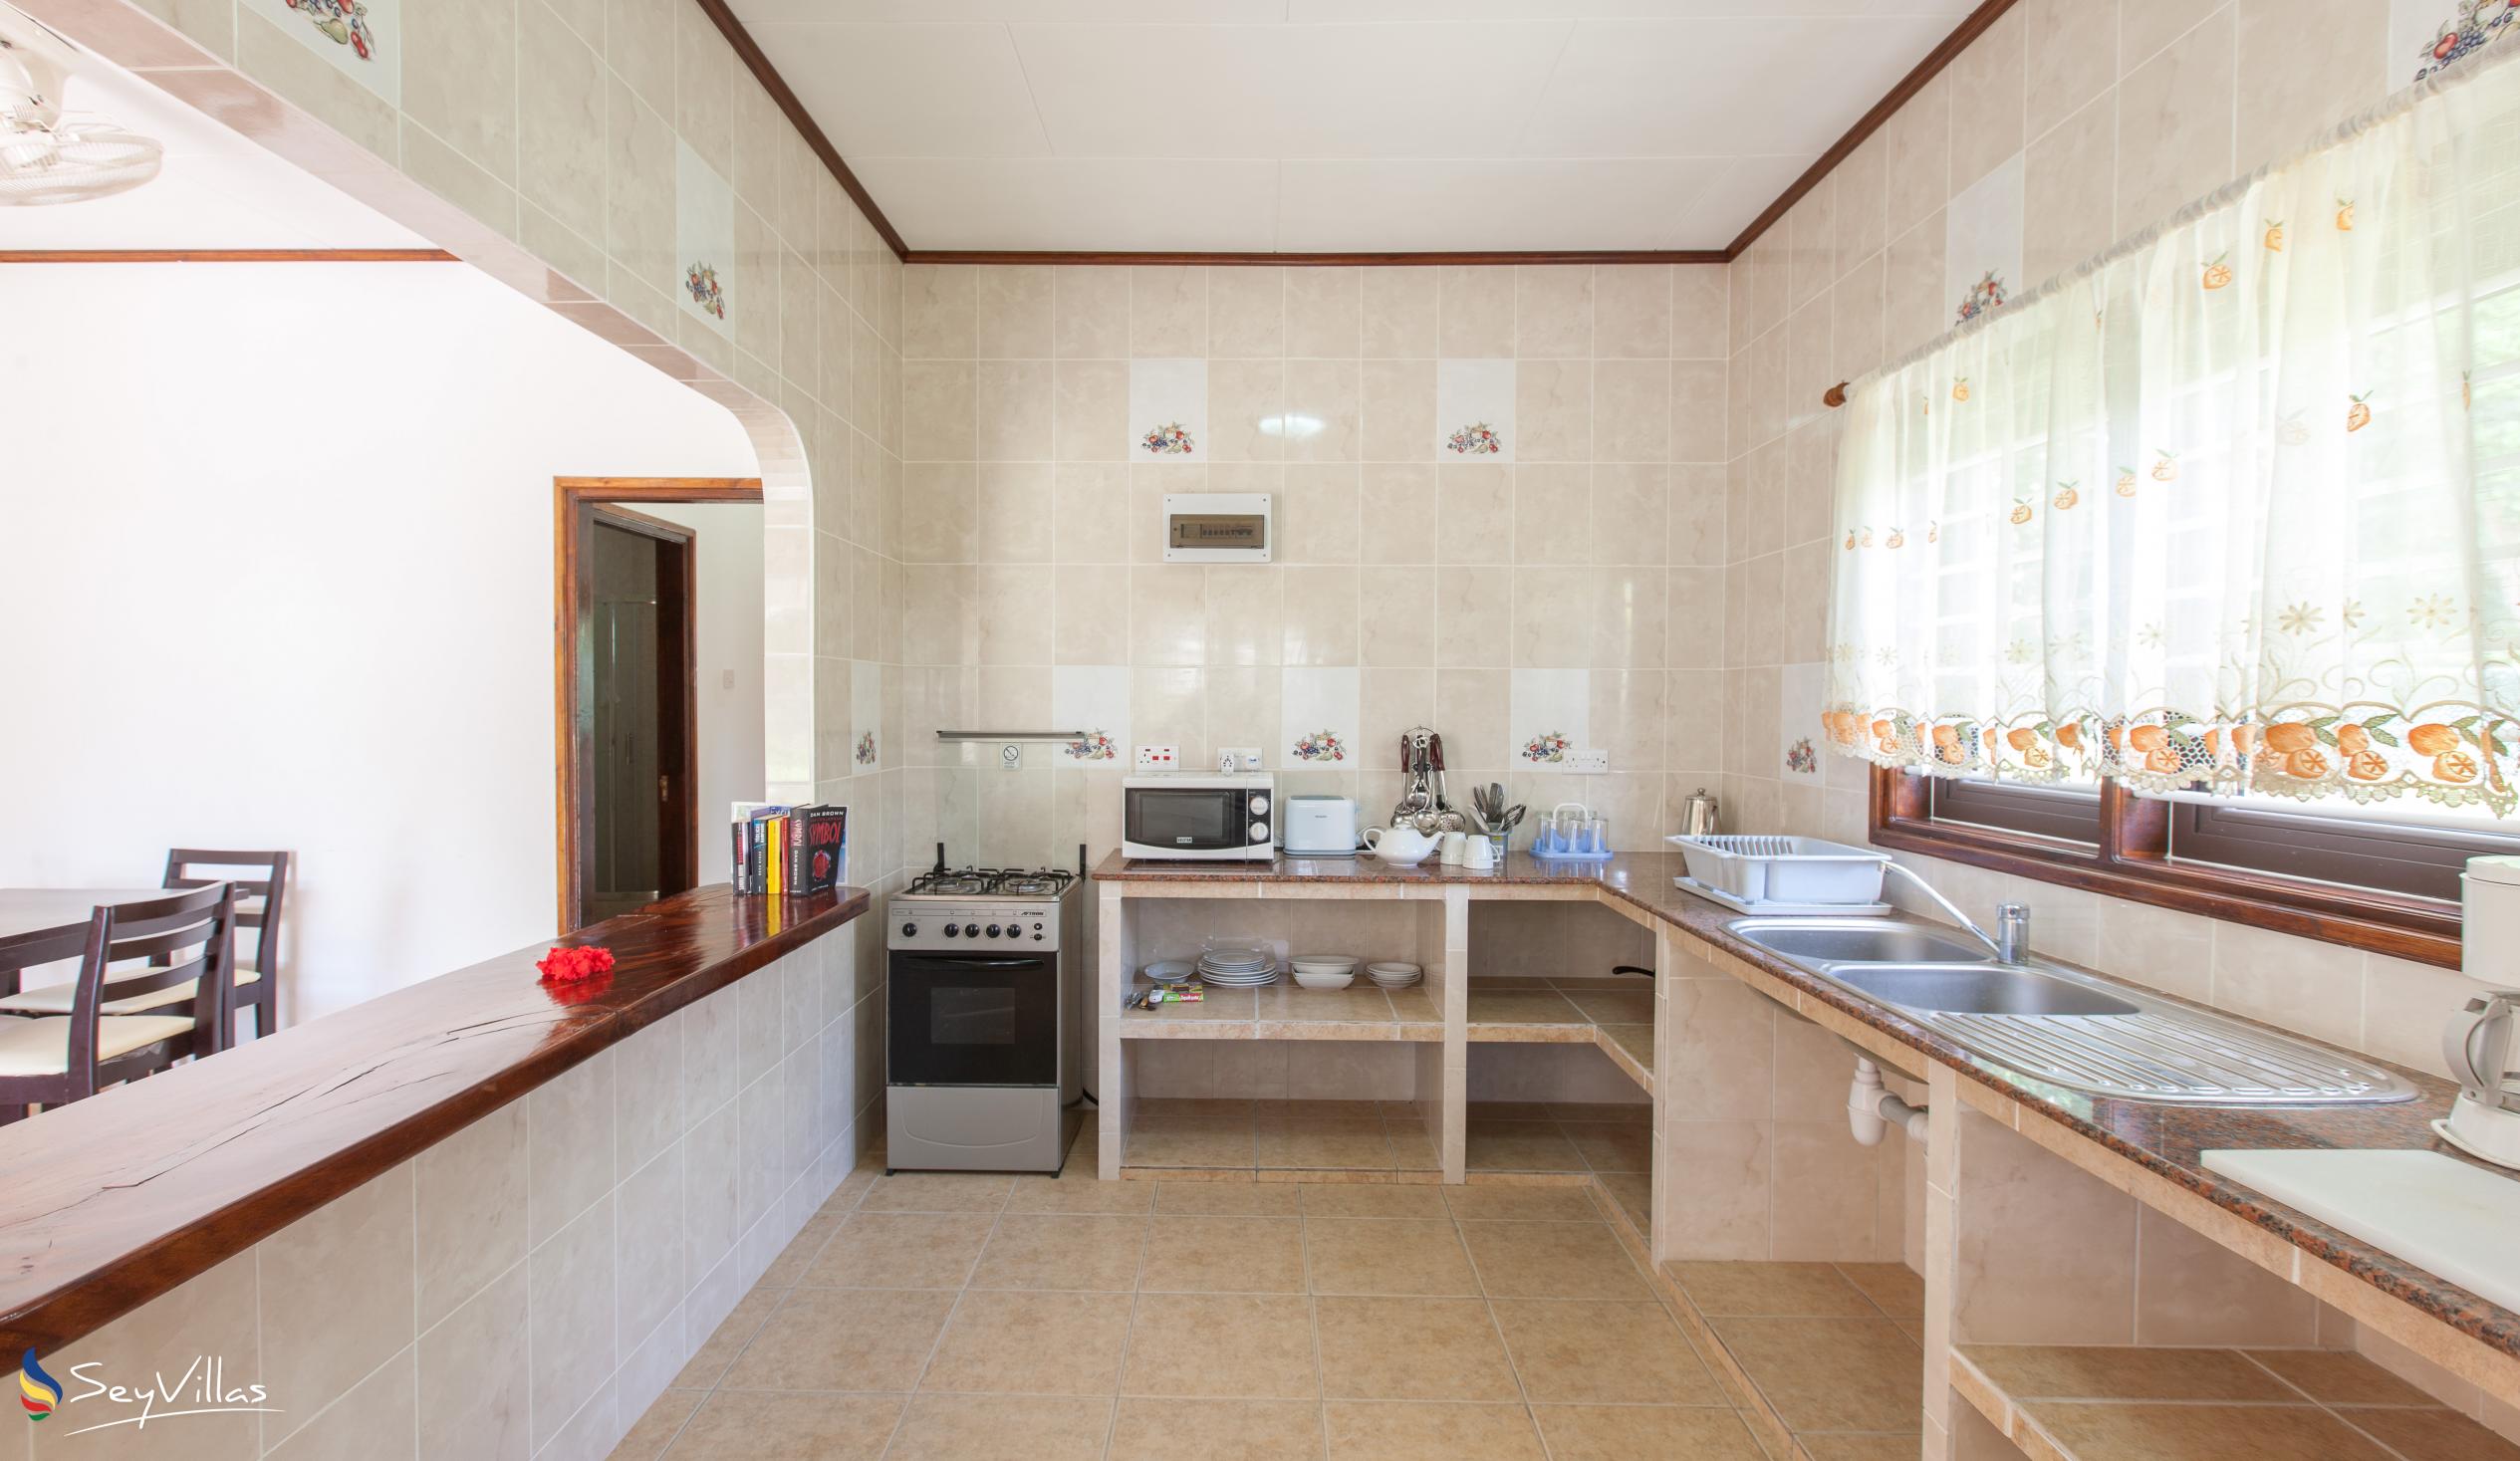 Foto 40: Zerof Self Catering  Apartments - Bungalow à 2 chambres - La Digue (Seychelles)